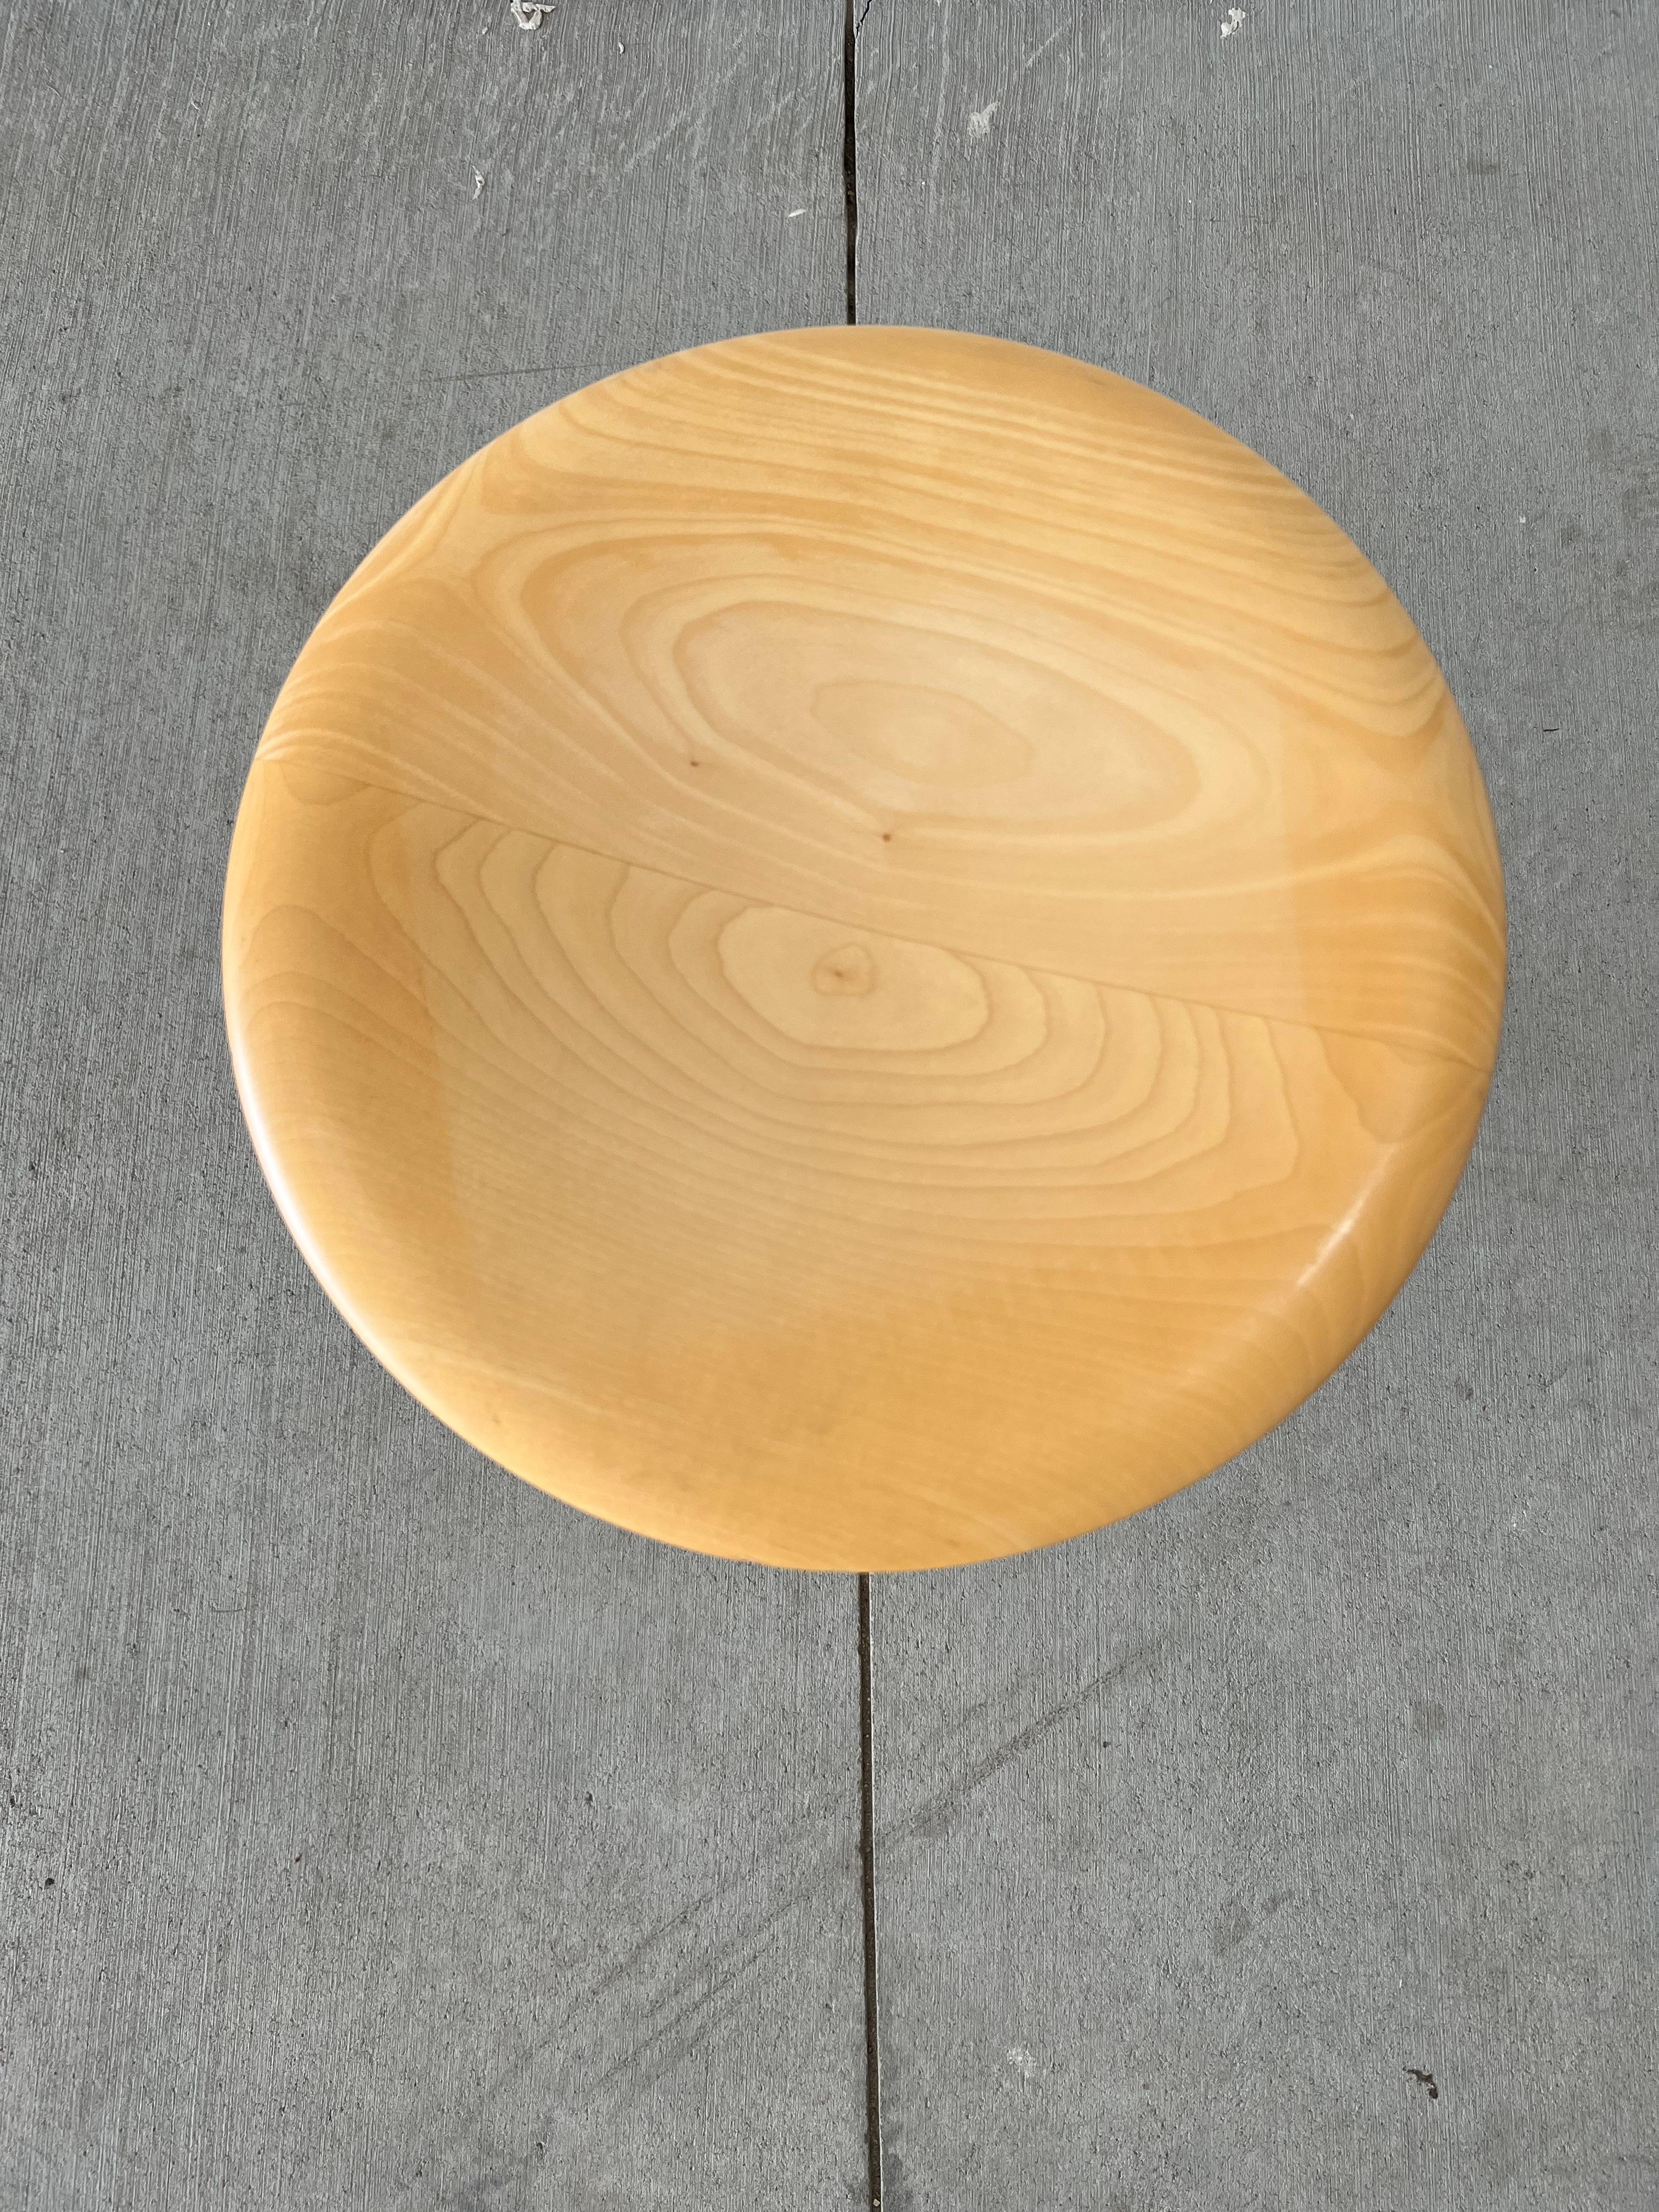 Isamu Noguchi ikonischer Schaukelstuhl aus blondem Holz mit polierten Chromakzenten, 14